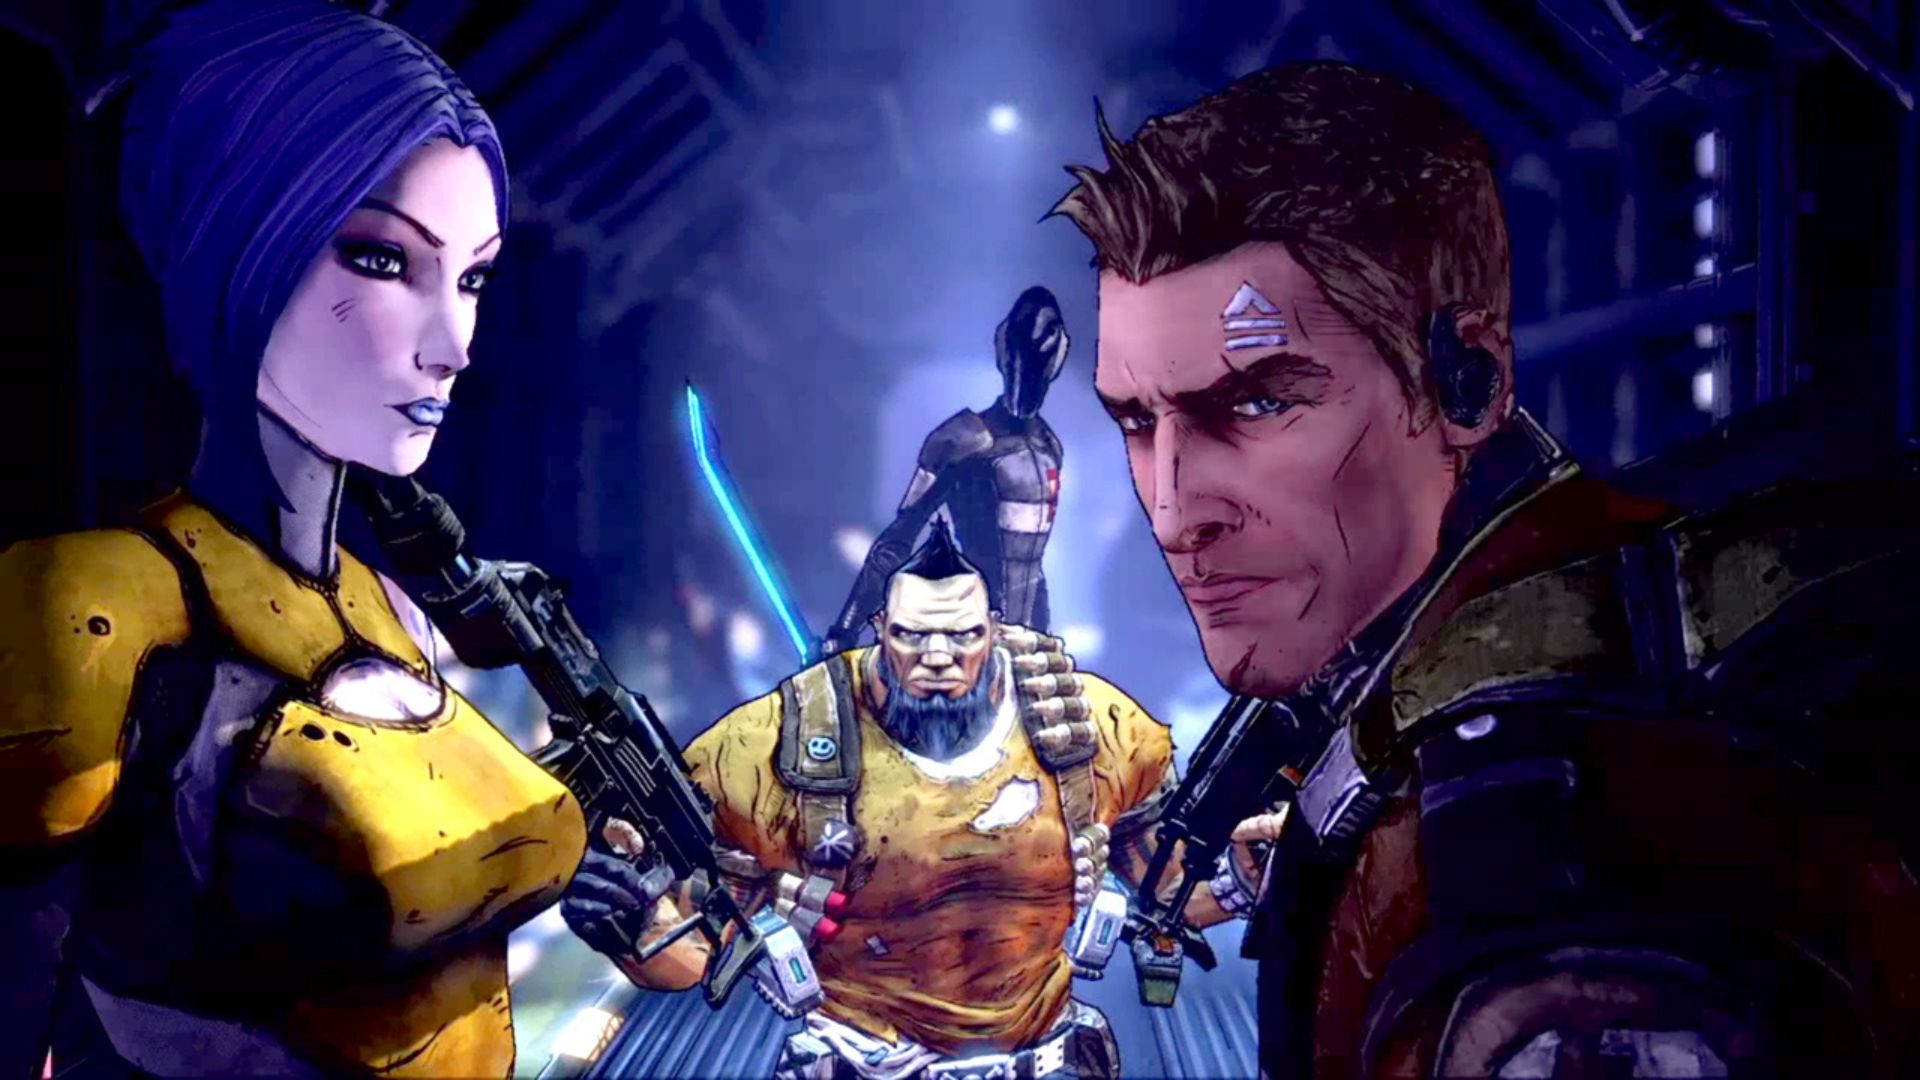 FPS ゲーム - Borderland の 3 人のキャラクター。 左は青い髪と黄色い上着の女性、中央はとがった髪と黄色い上着の強い男性、右は短い茶色の髪と首に鎧をまとった彫りの深い男性。